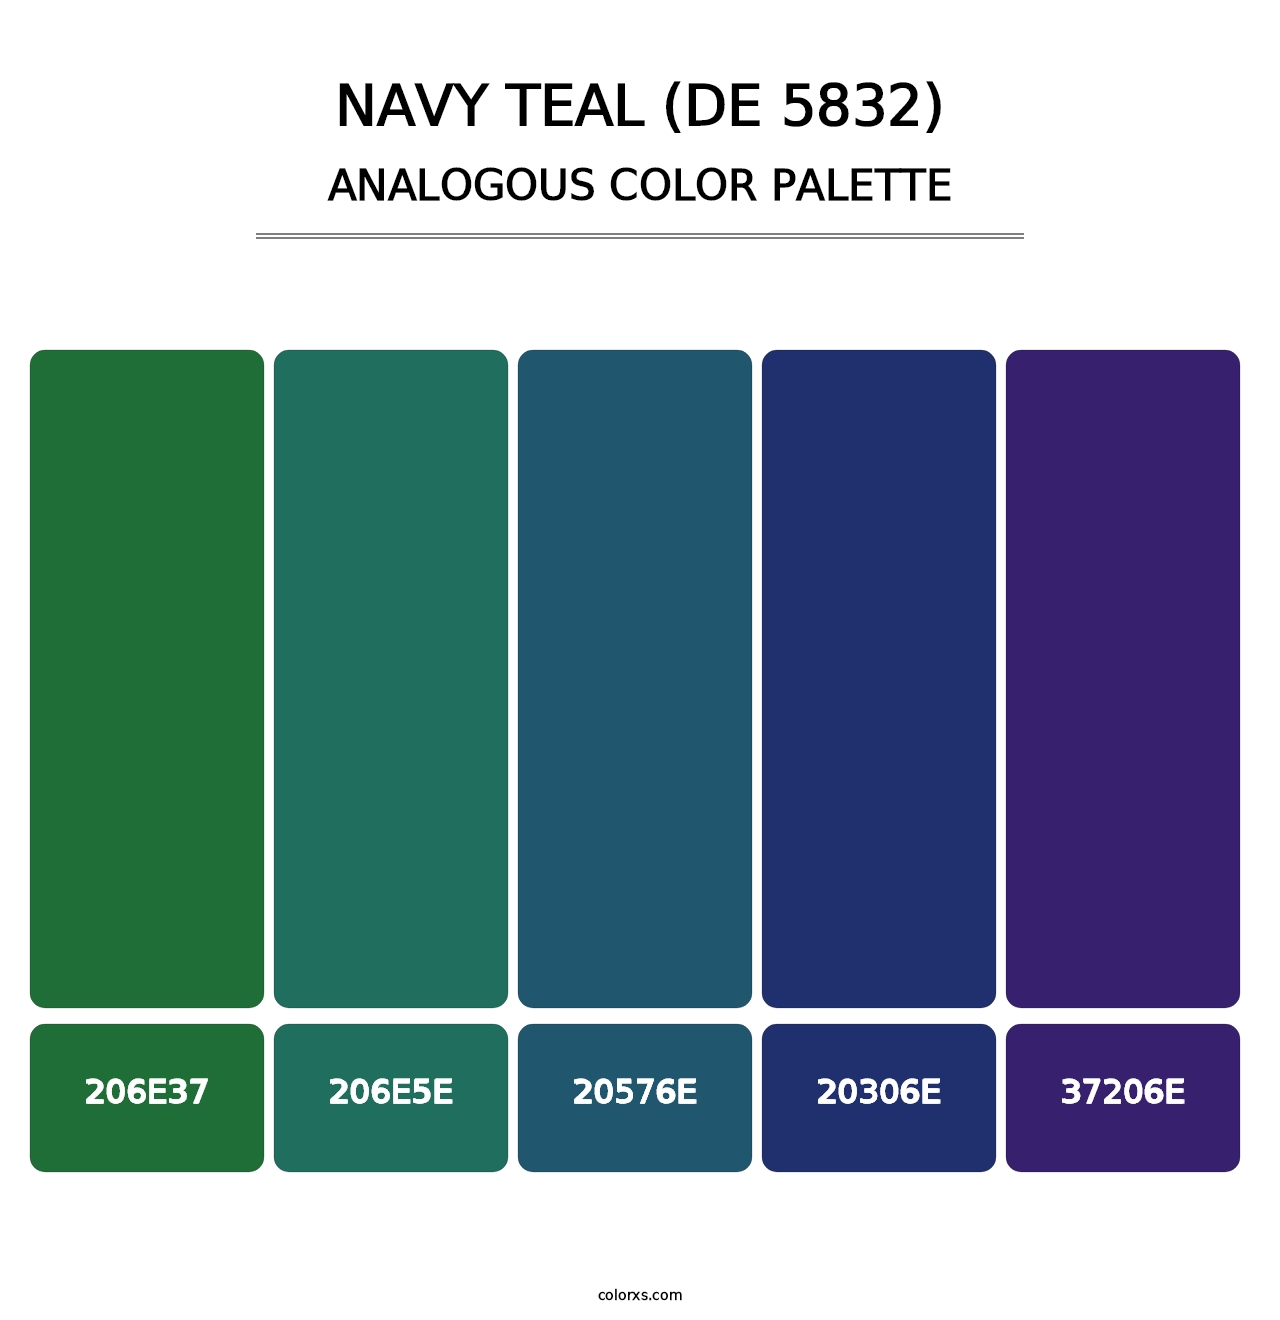 Navy Teal (DE 5832) - Analogous Color Palette